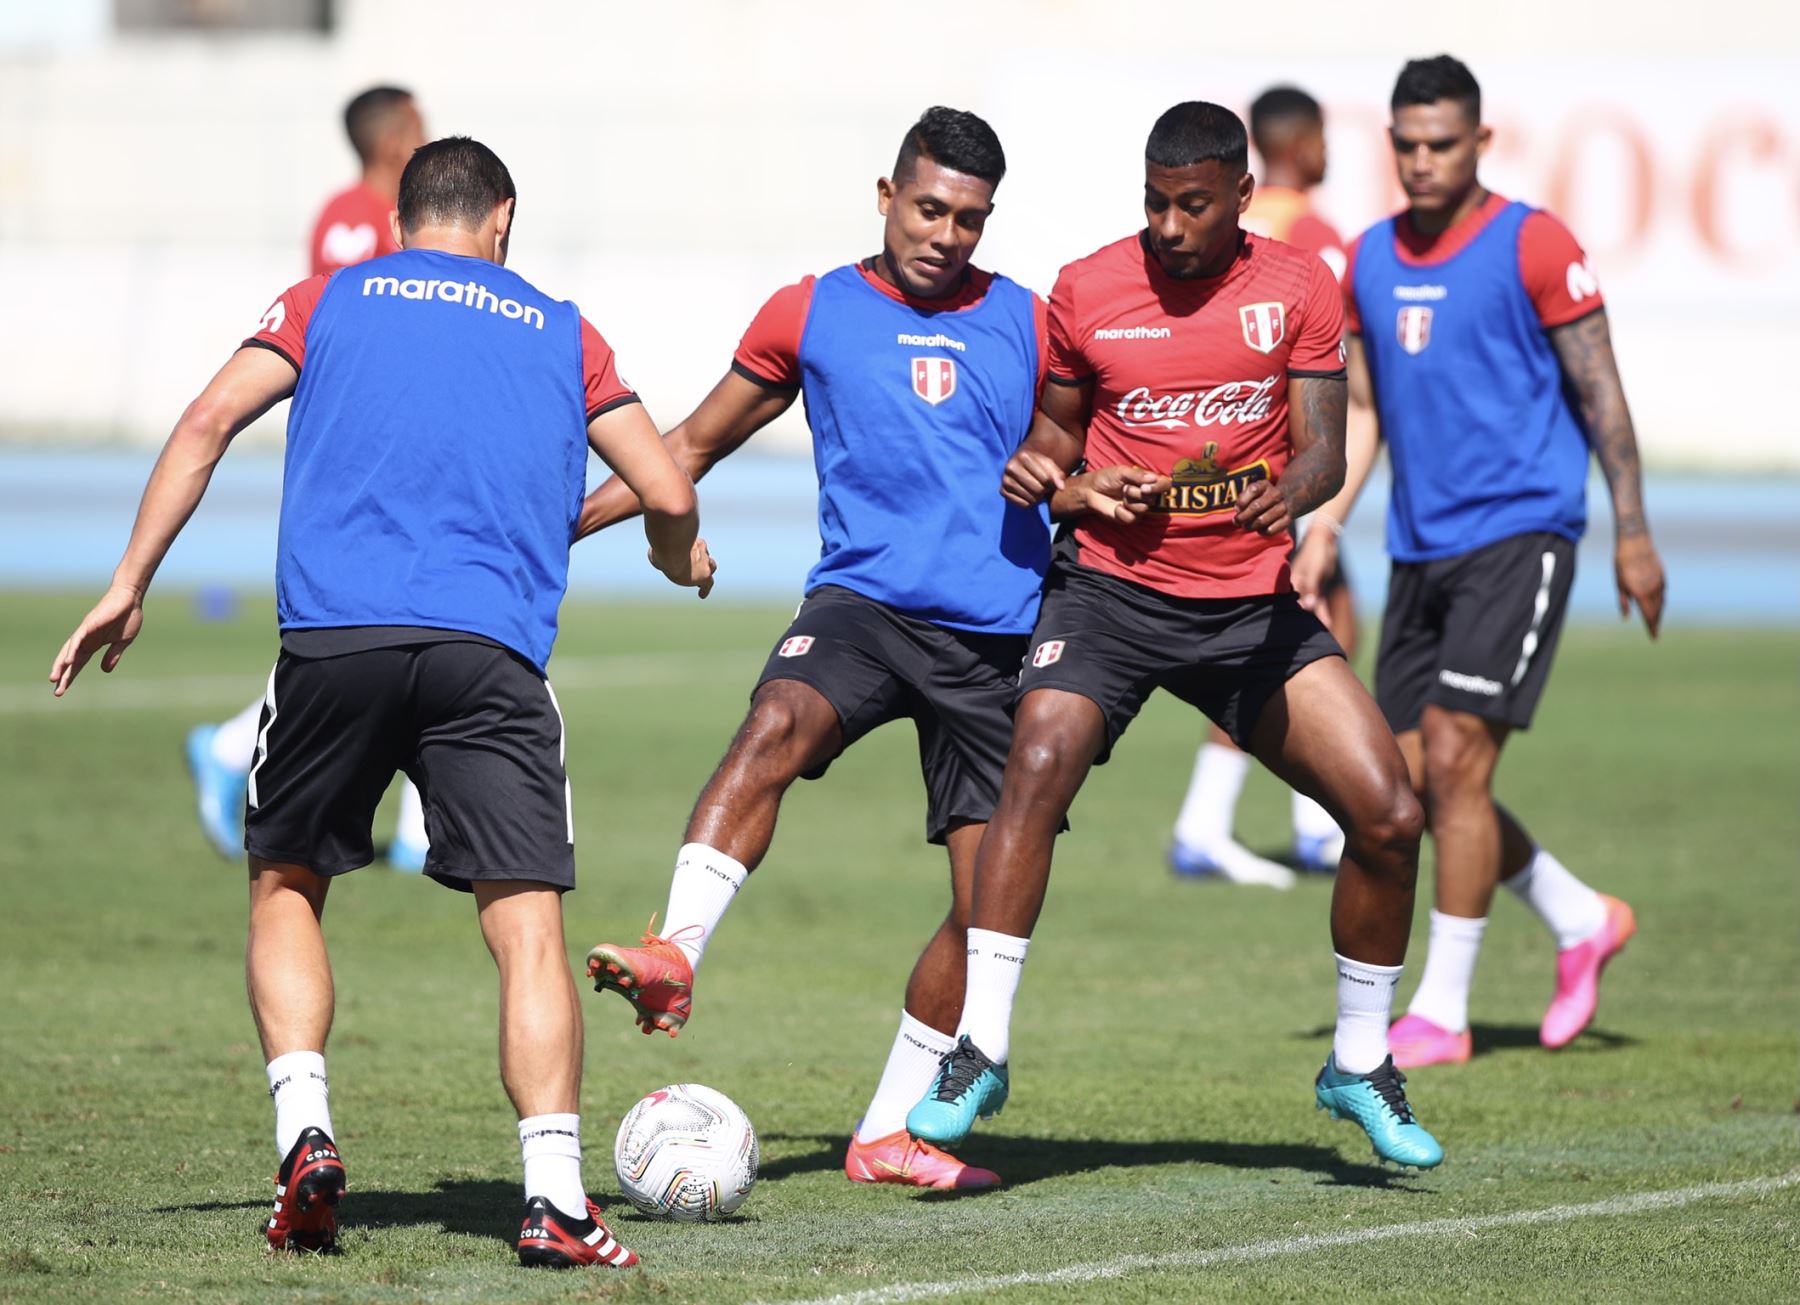 La selección peruana realizó su primer entrenamiento en tierras brasileñas para su debut en la Copa América 2021, el jueves 17 de junio ante Brasil.